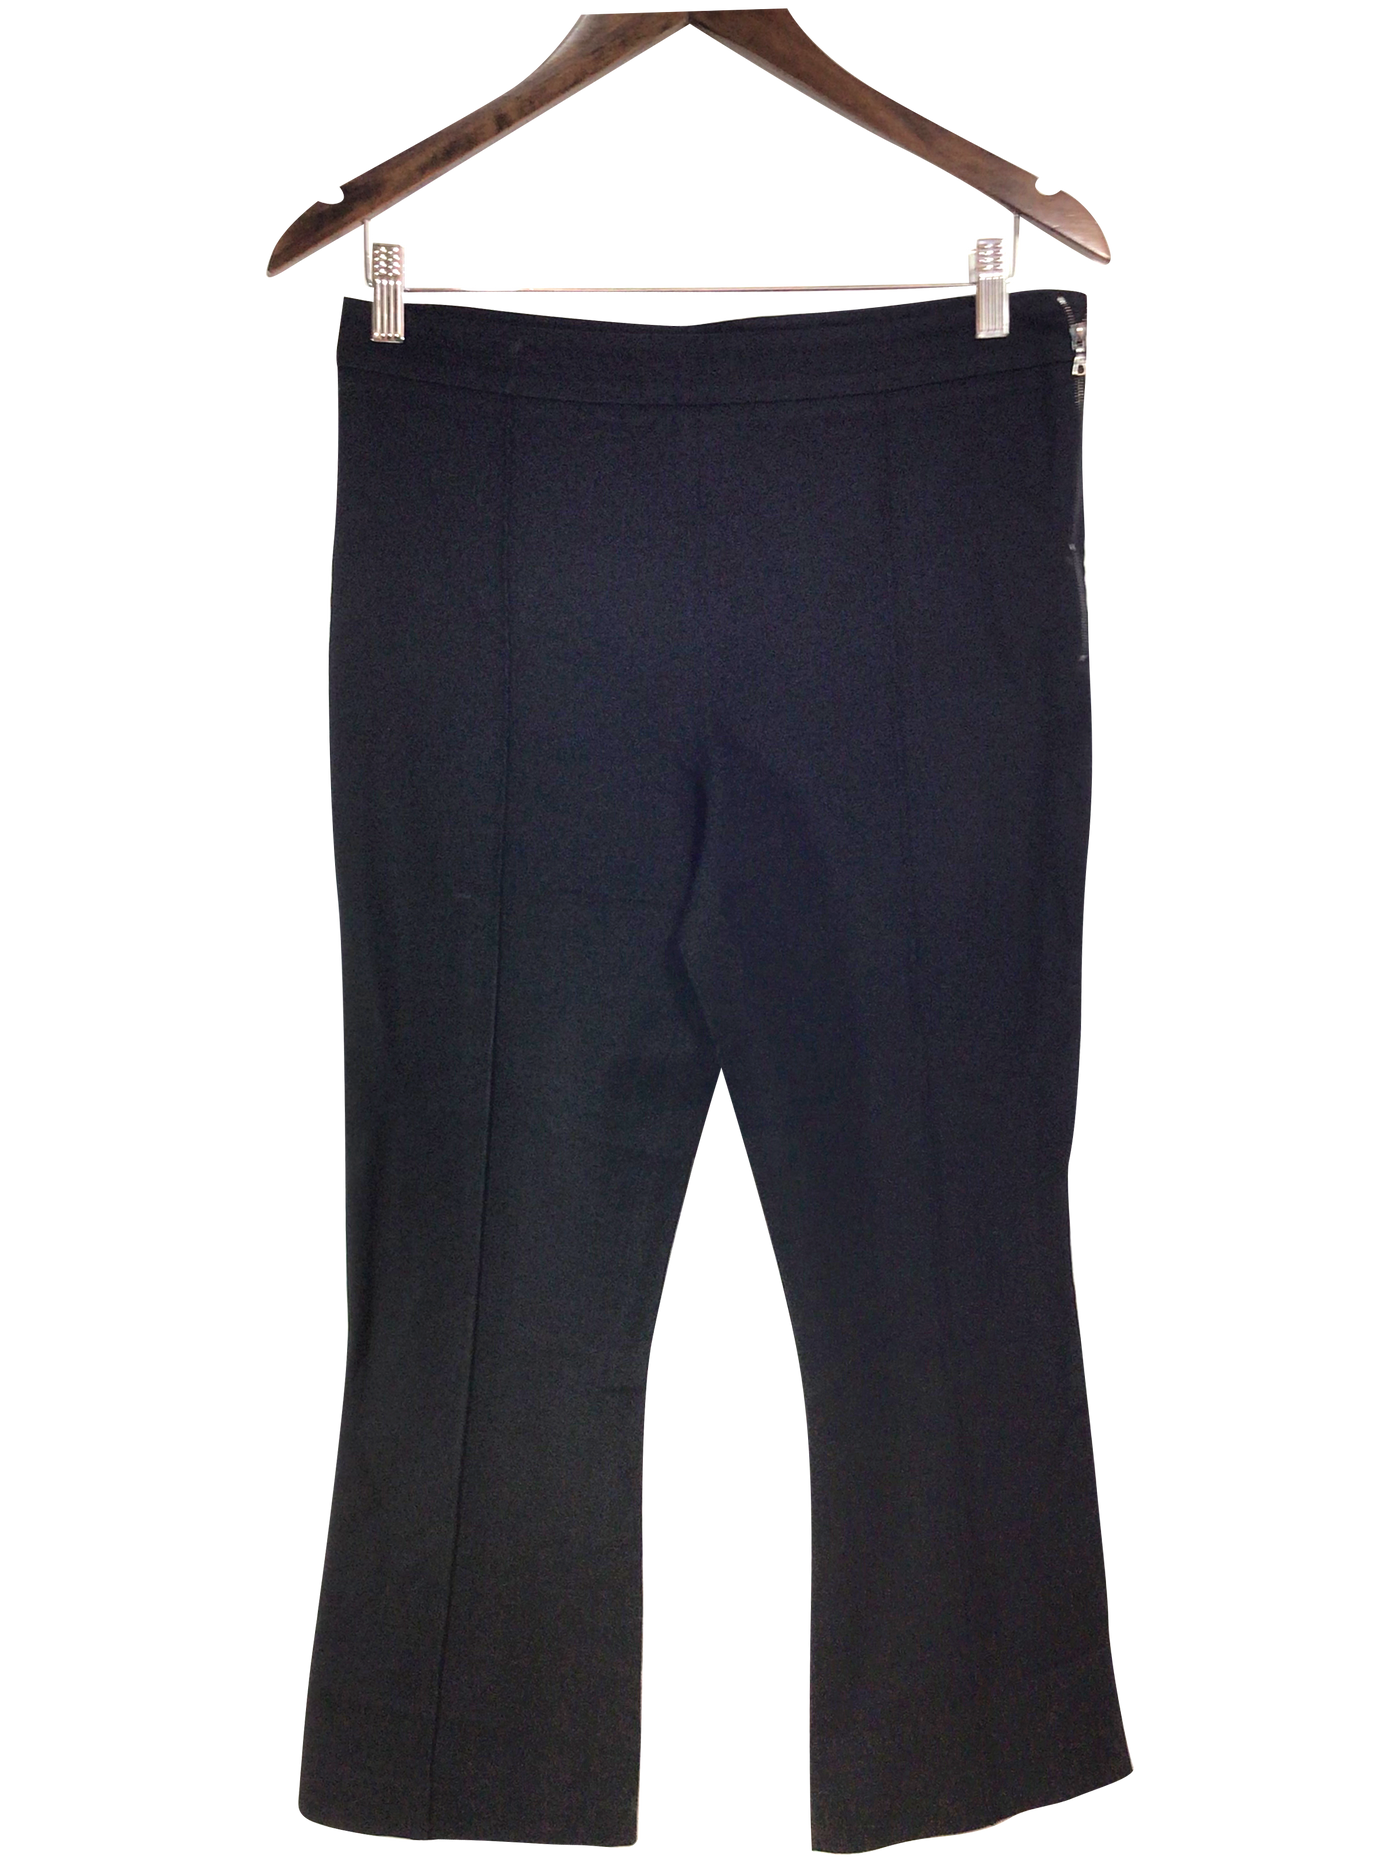 JUDITH & CHARLES Pant Regular fit in Black - Size 6 | 36.29 $ KOOP